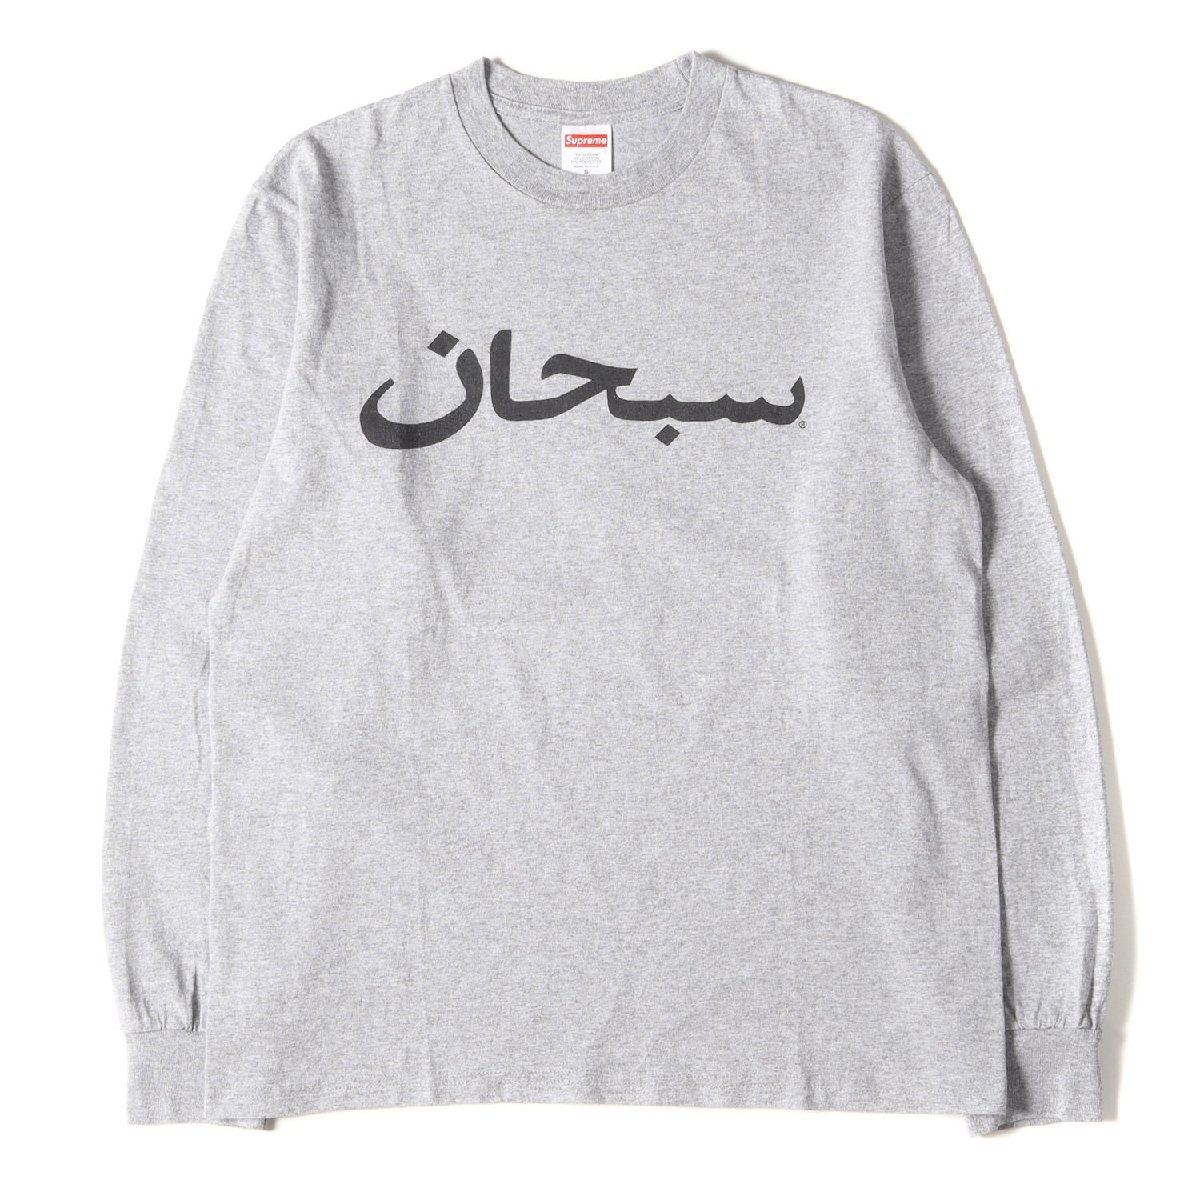 美品 Supreme シュプリーム Tシャツ サイズ:S アラビック ロゴ クルーネック ロングスリーブ Tシャツ Arabic Logo L/S Tee ヘザーグレー